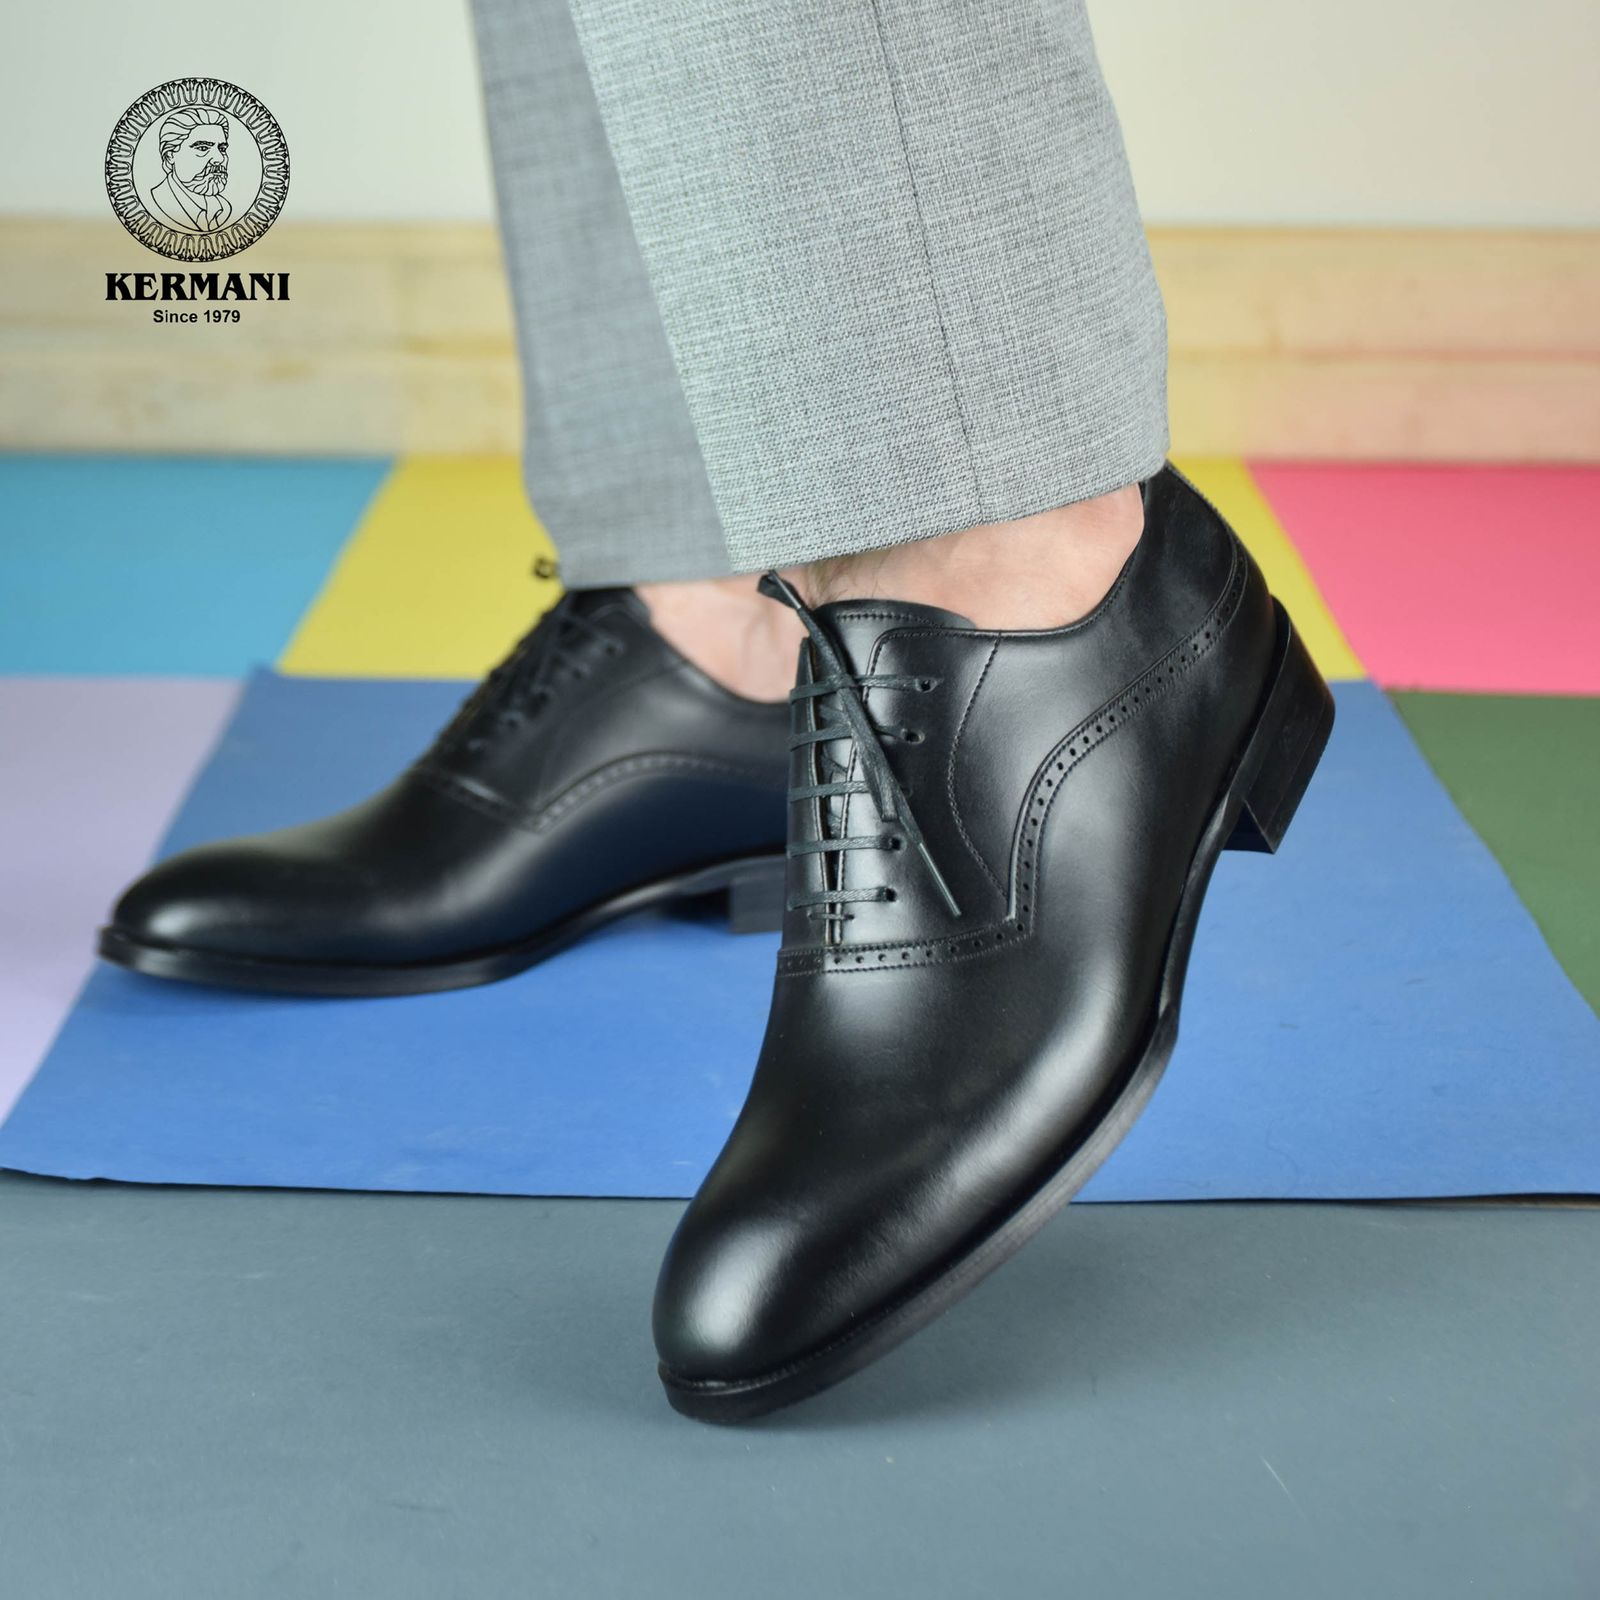 کفش مردانه کرمانی مدل چرم دستدوز طبیعی کد 1071 رنگ مشکی -  - 2